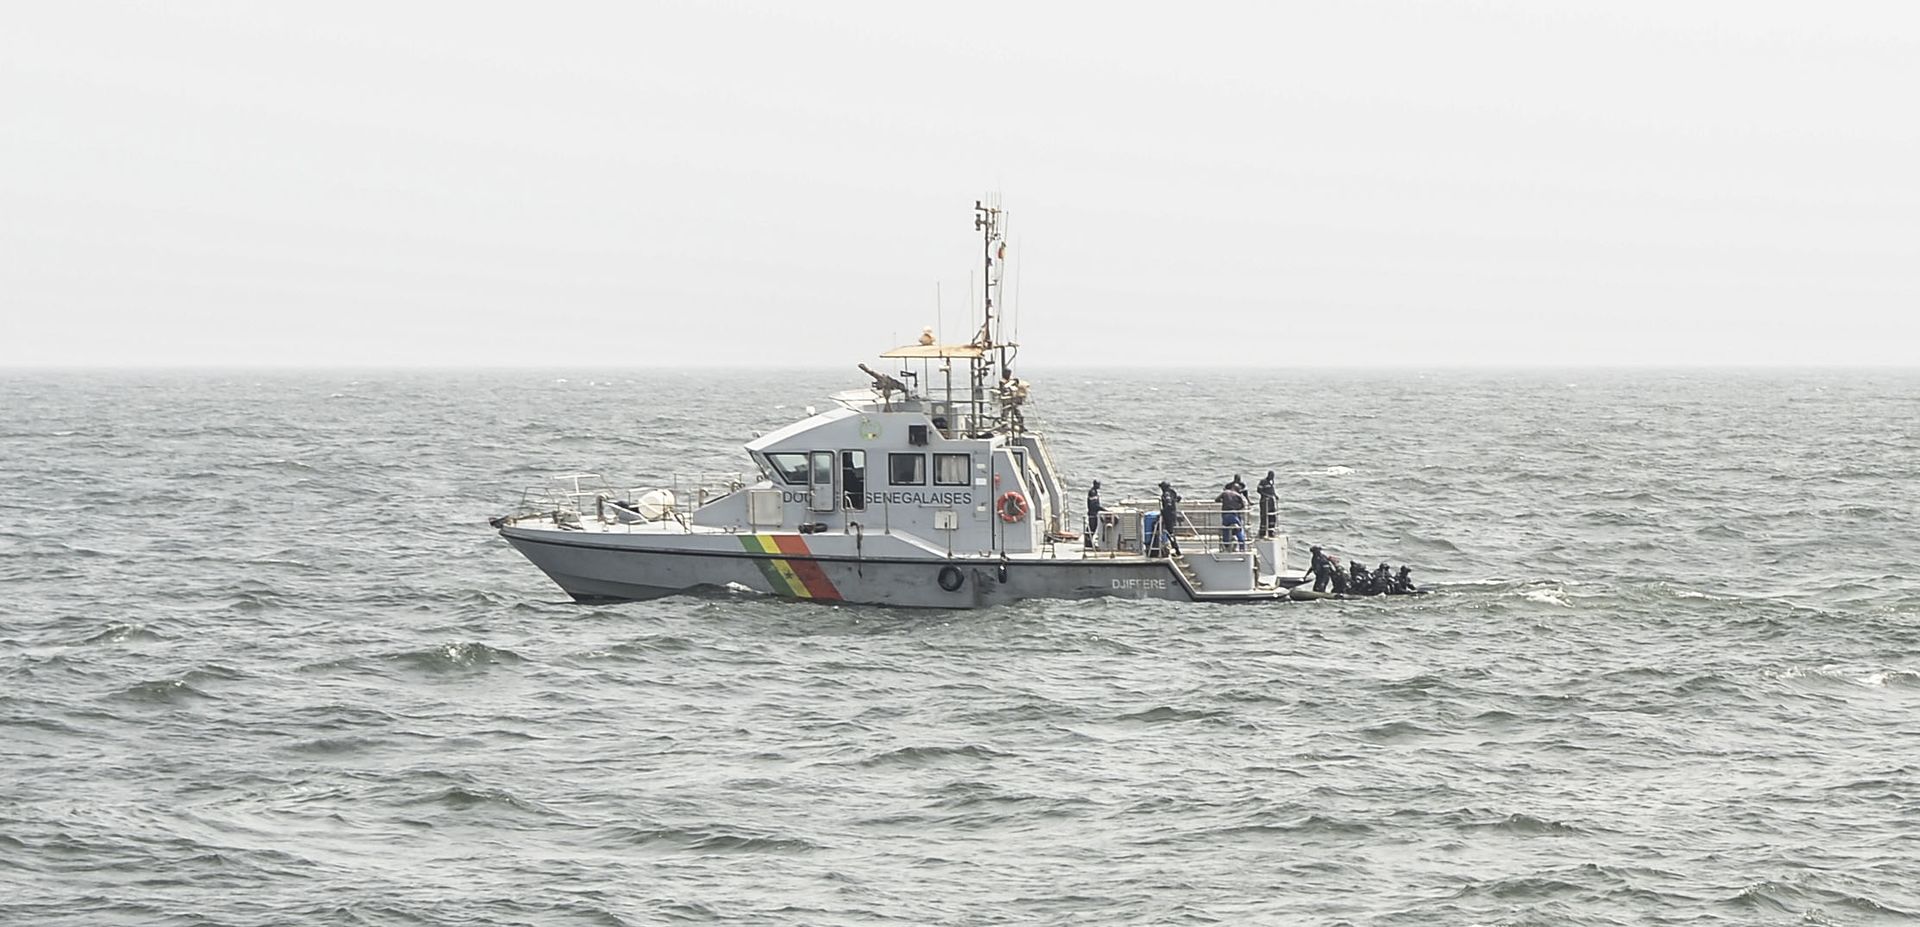 Coronavirus : un bateau transportant 38 touristes, renvoyé manu militari à Dakar pour contrôles sanitaires